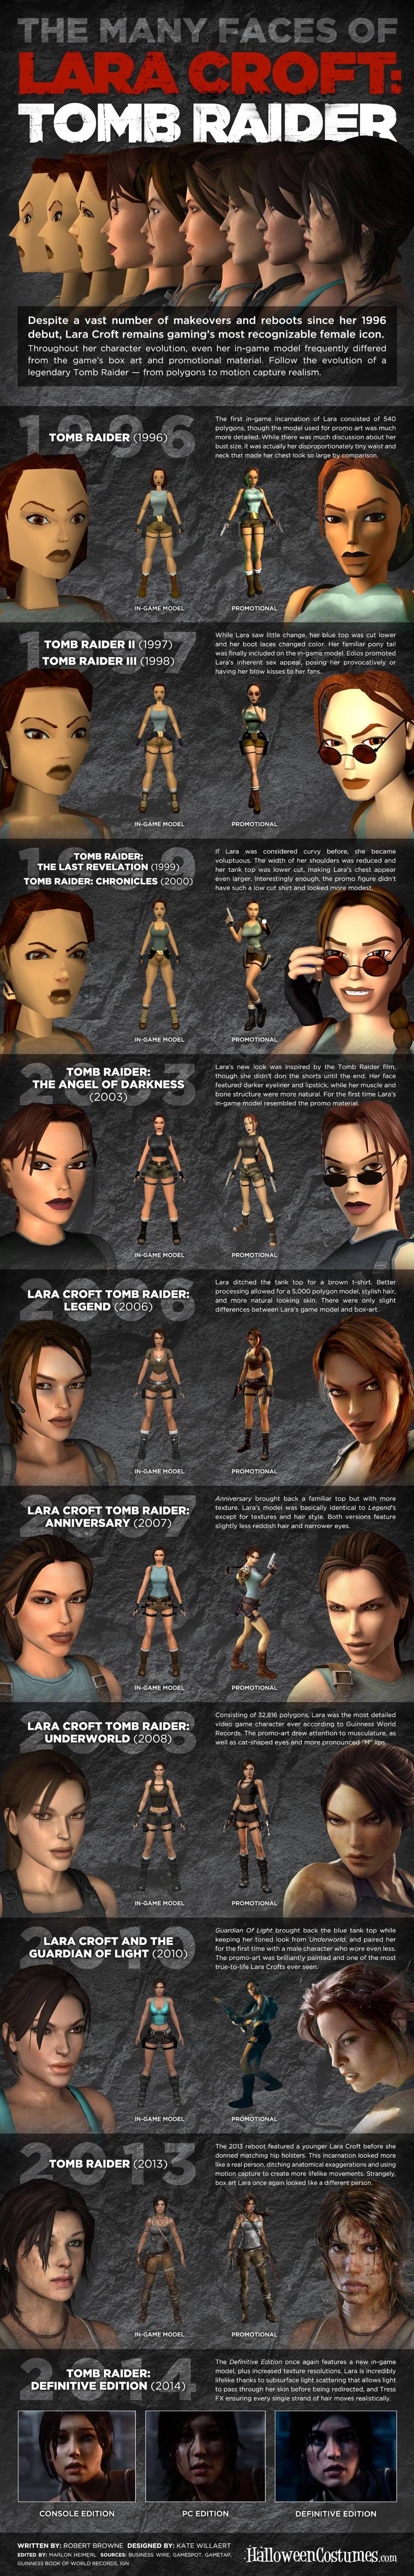 The Many Faces of Lara Croft